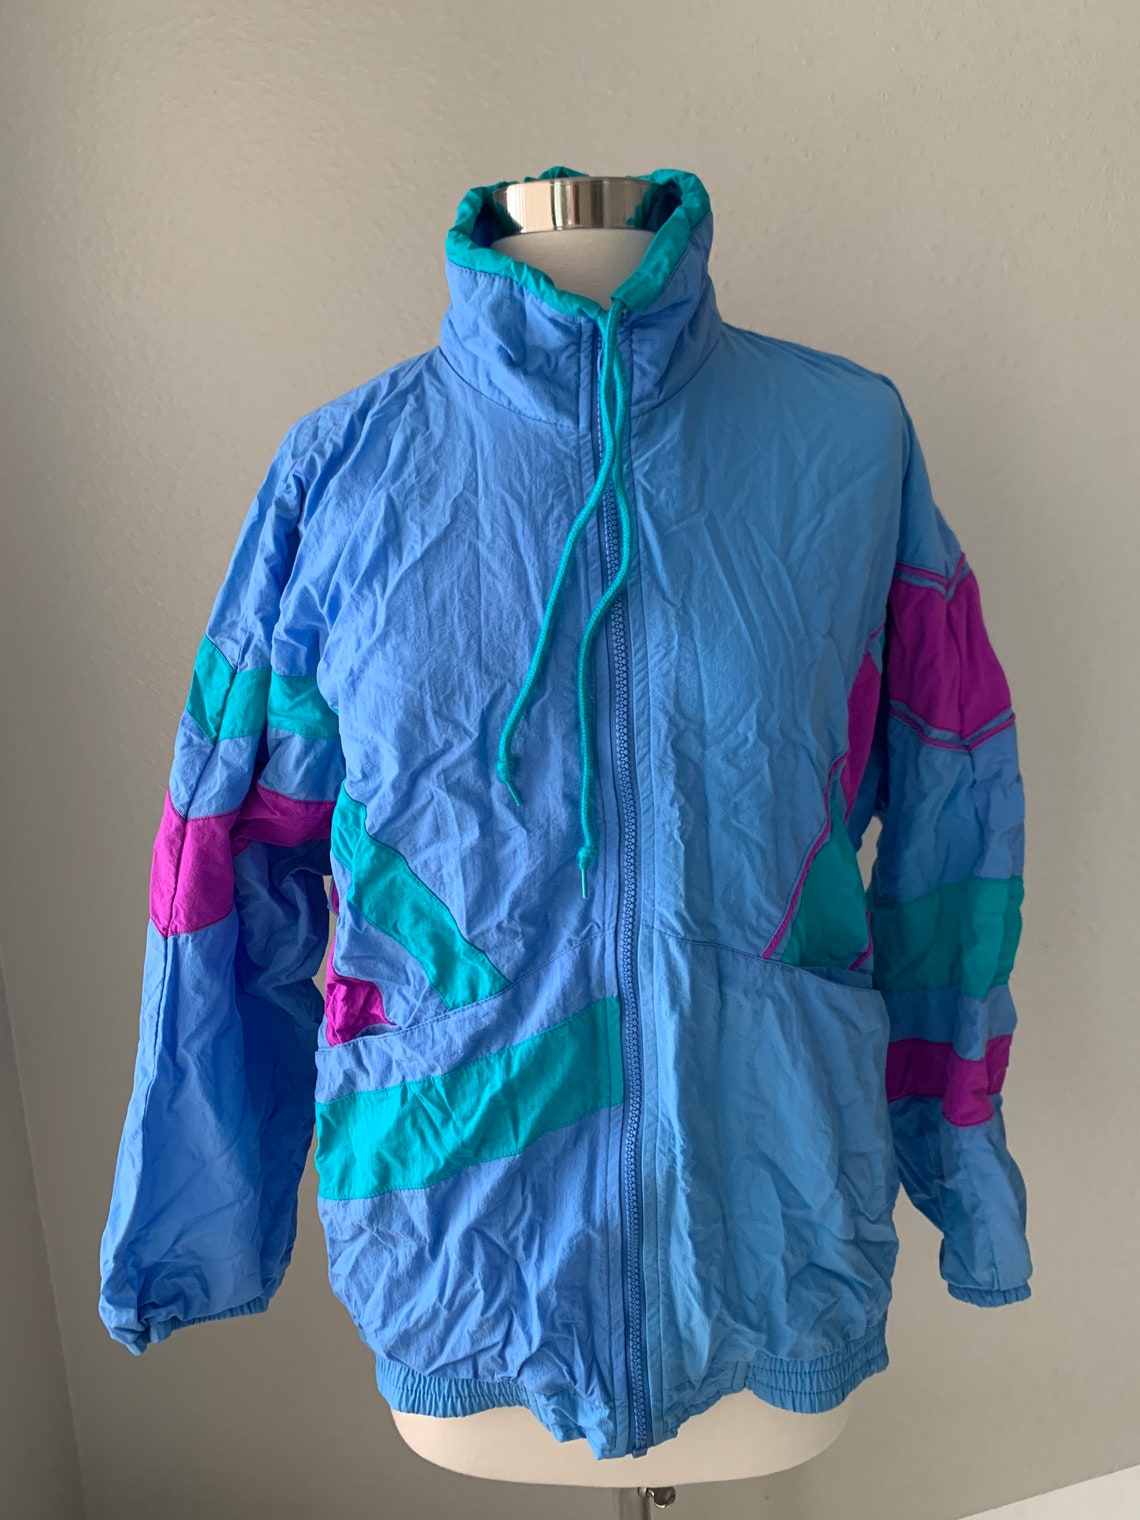 Retro windbreaker jacket medium | Etsy